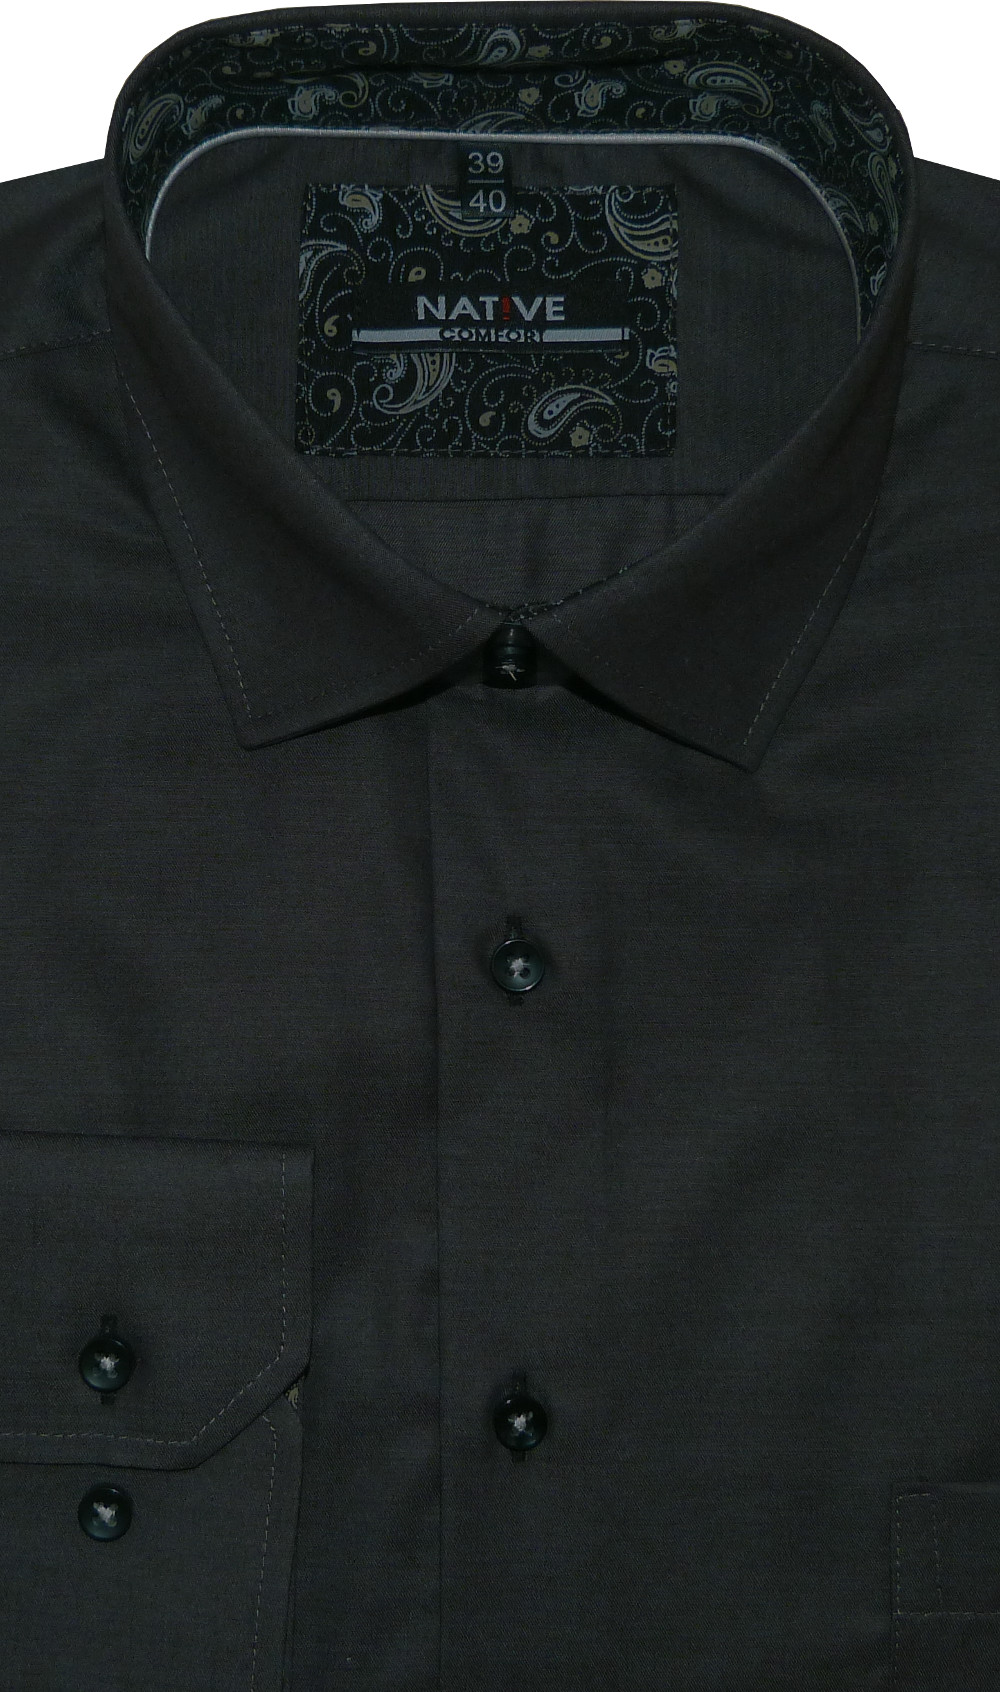 Pánská košile (šedá) s dlouhým rukávem, vel. 39/40 - N195/311